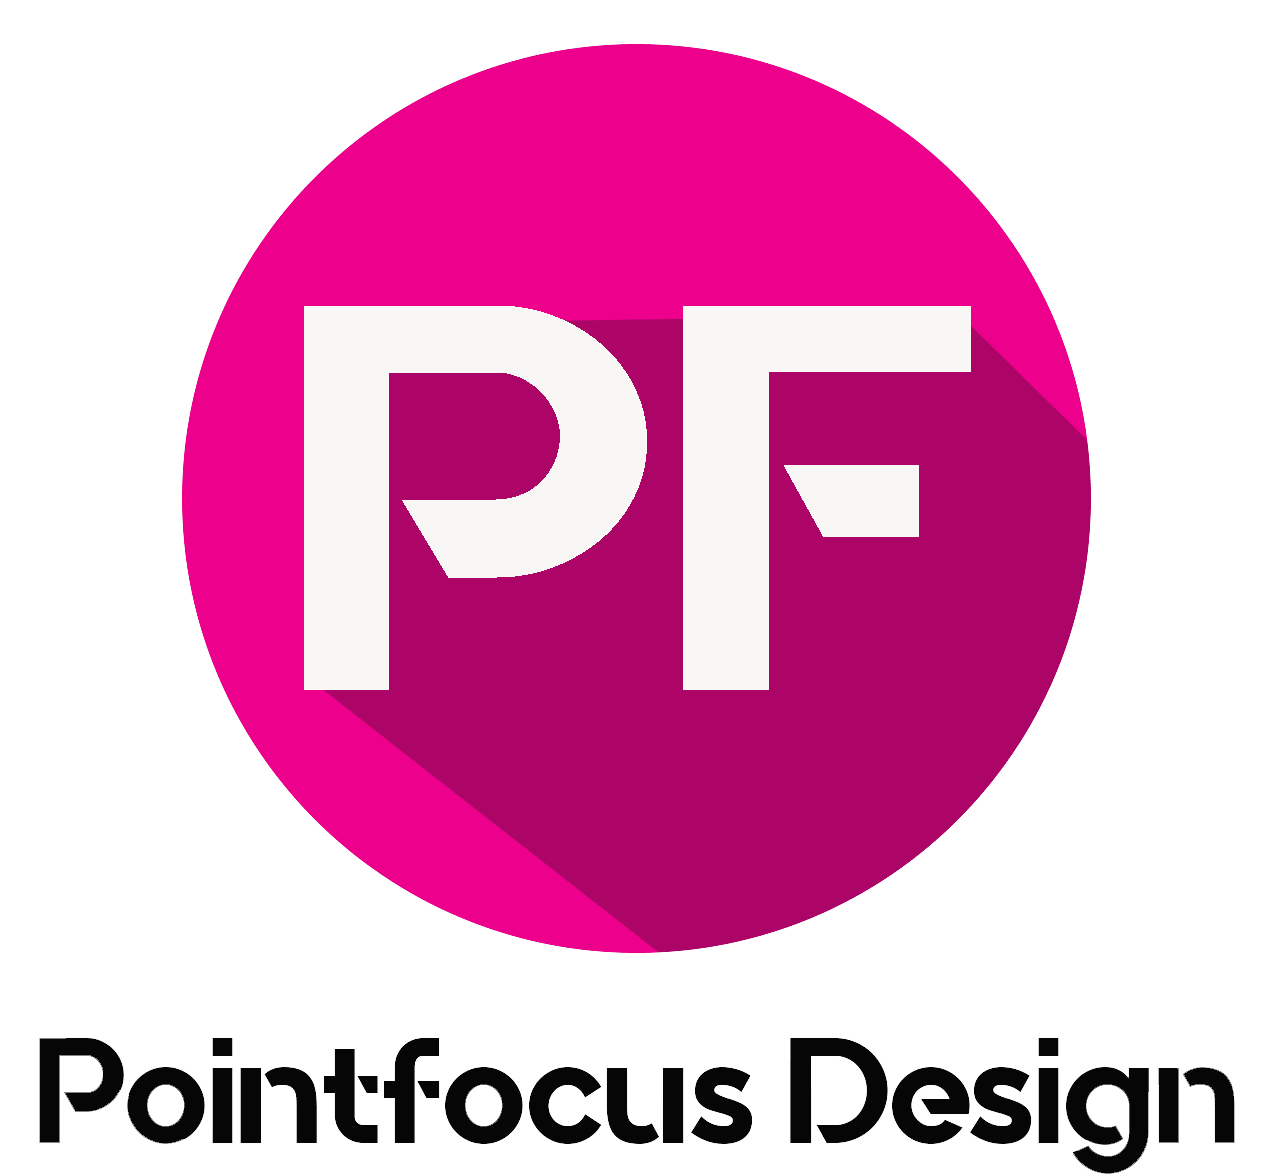 Point Design Focus